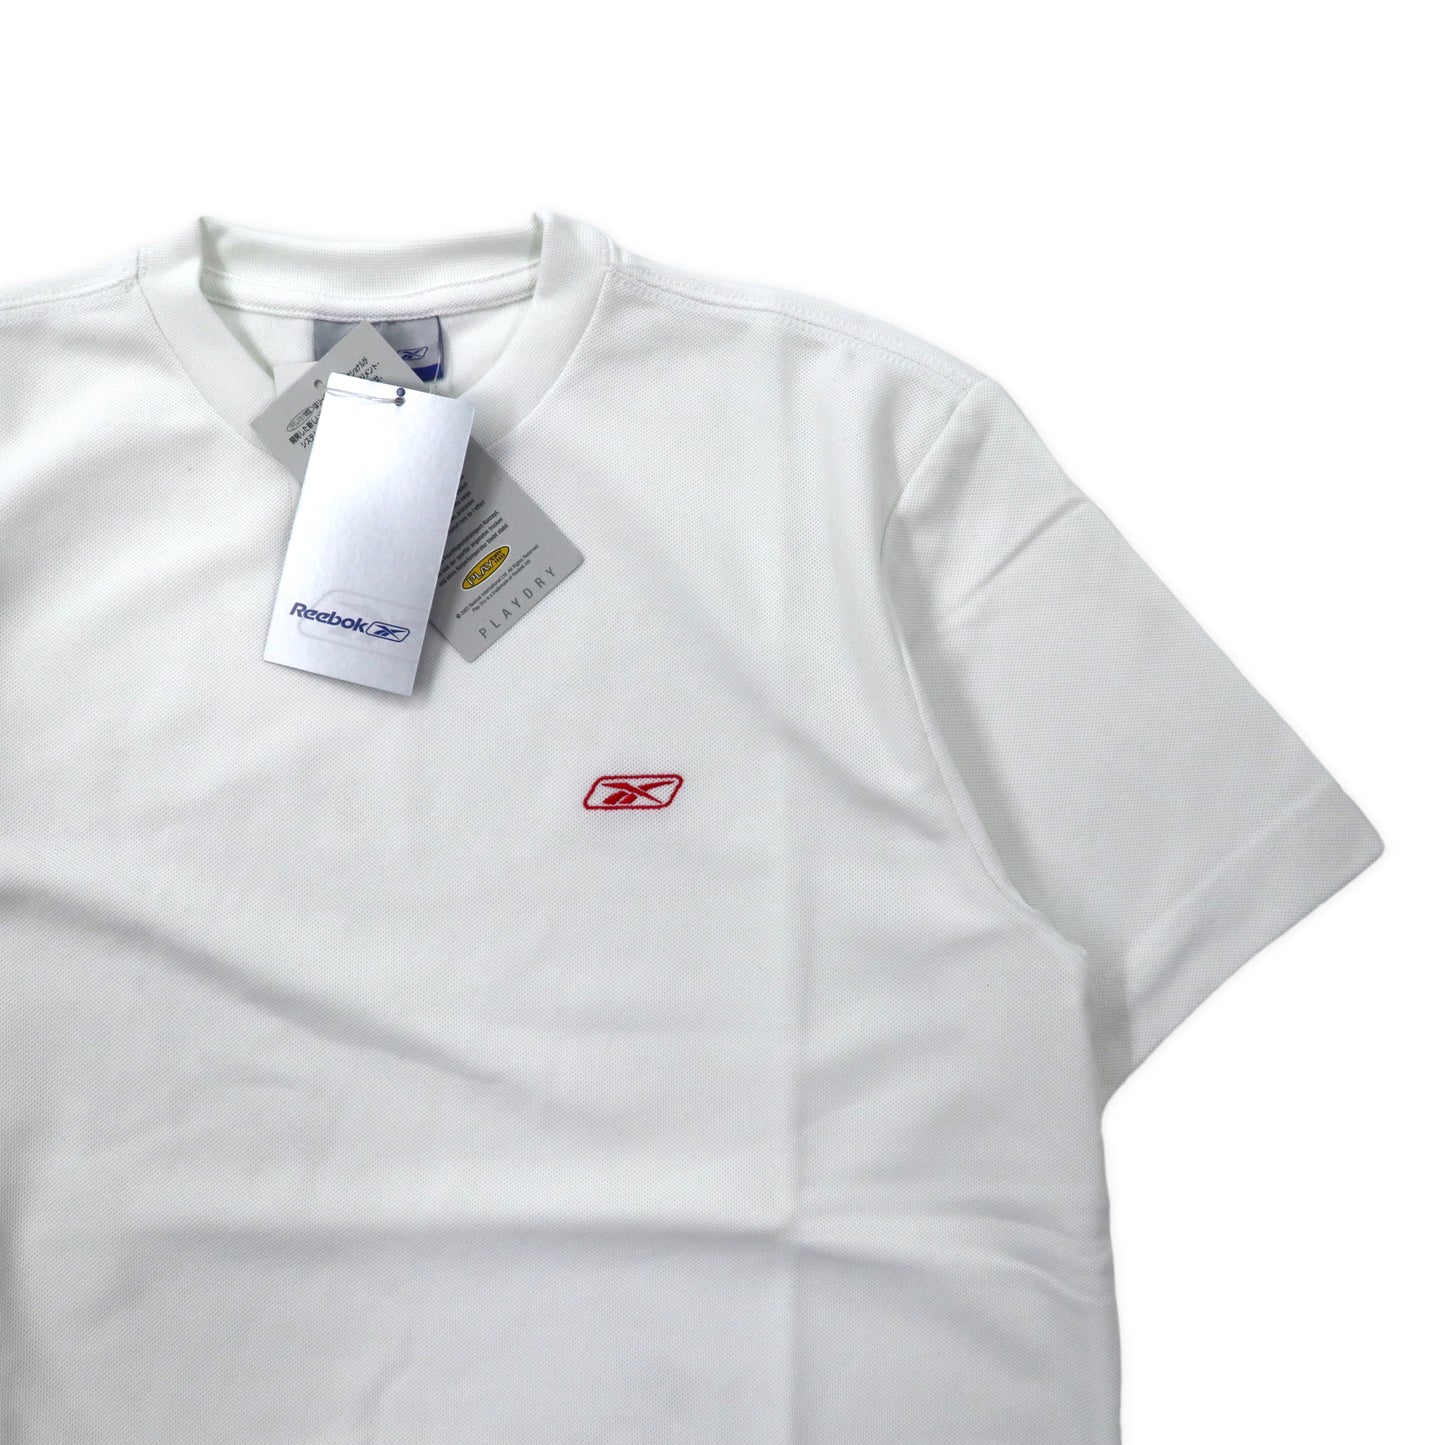 Reebok PLAY DRY Tシャツ M ホワイト ポリエステル ワンポイントロゴ 未使用品